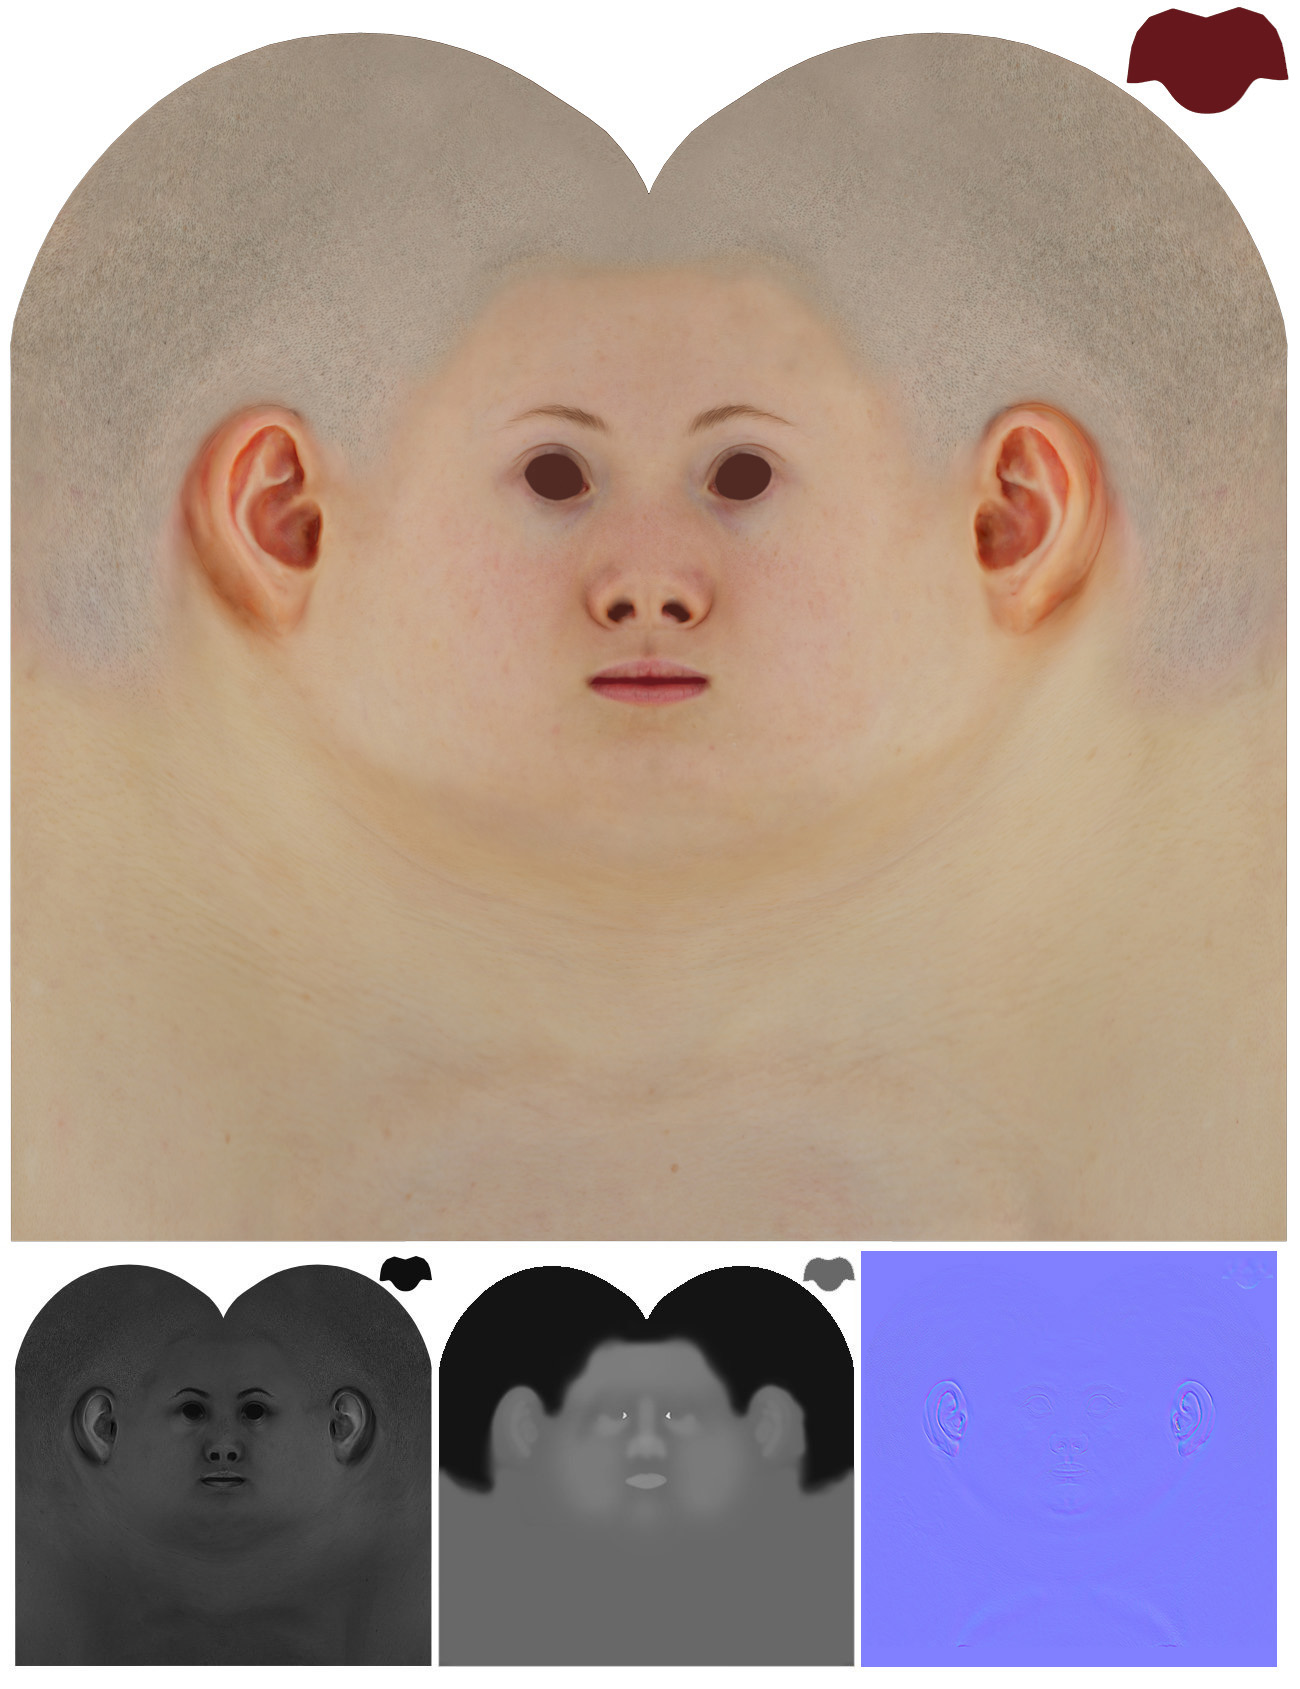 20's white Female scan model in Zbrush 3D UV maps